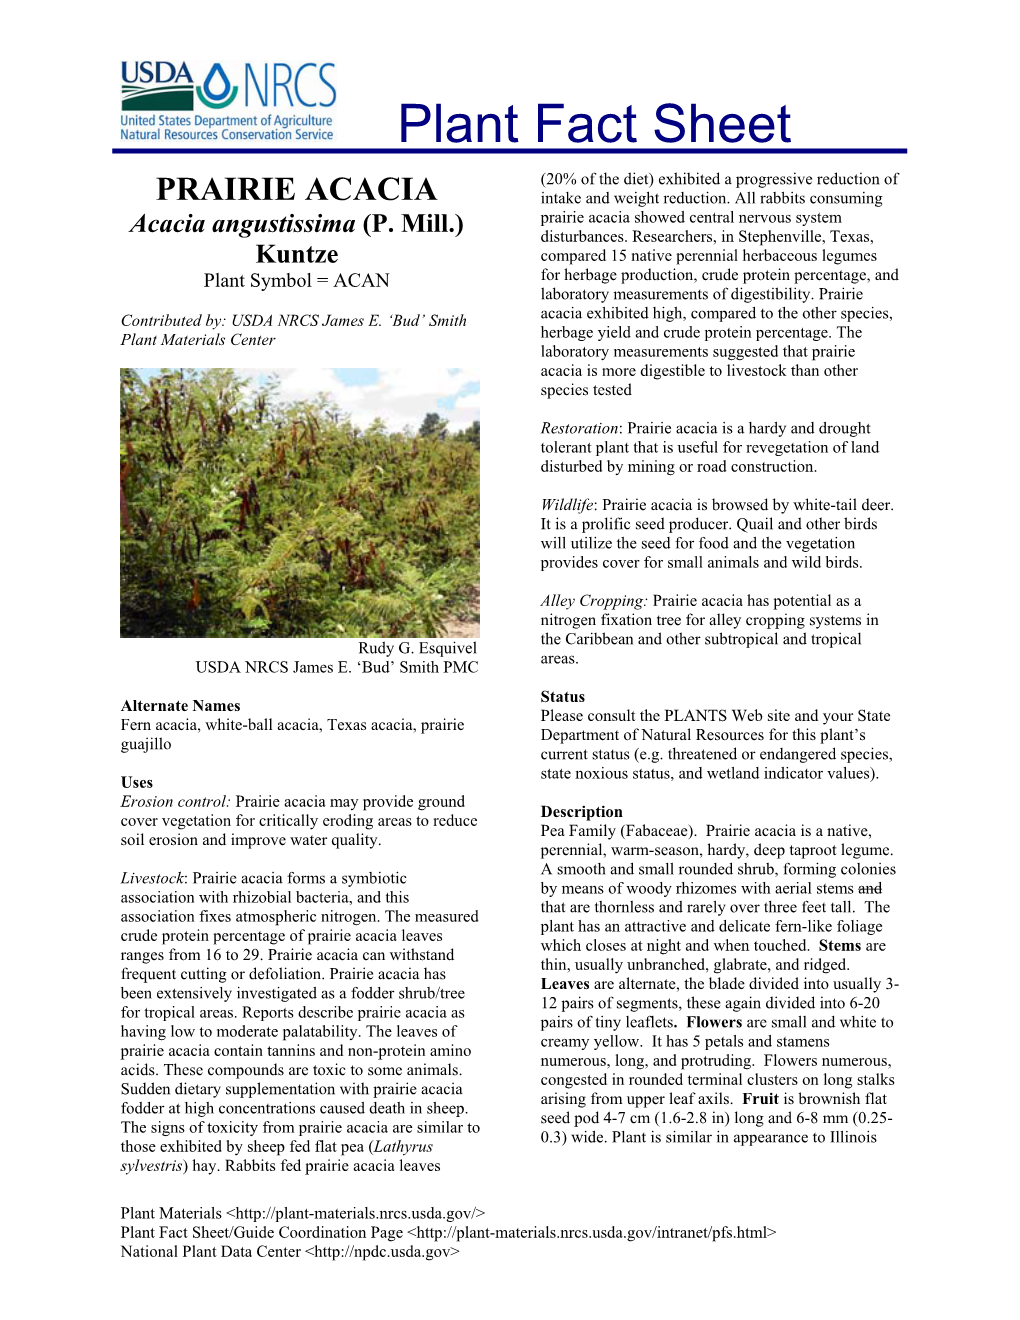 Prairie Acacia Plant Fact Sheet